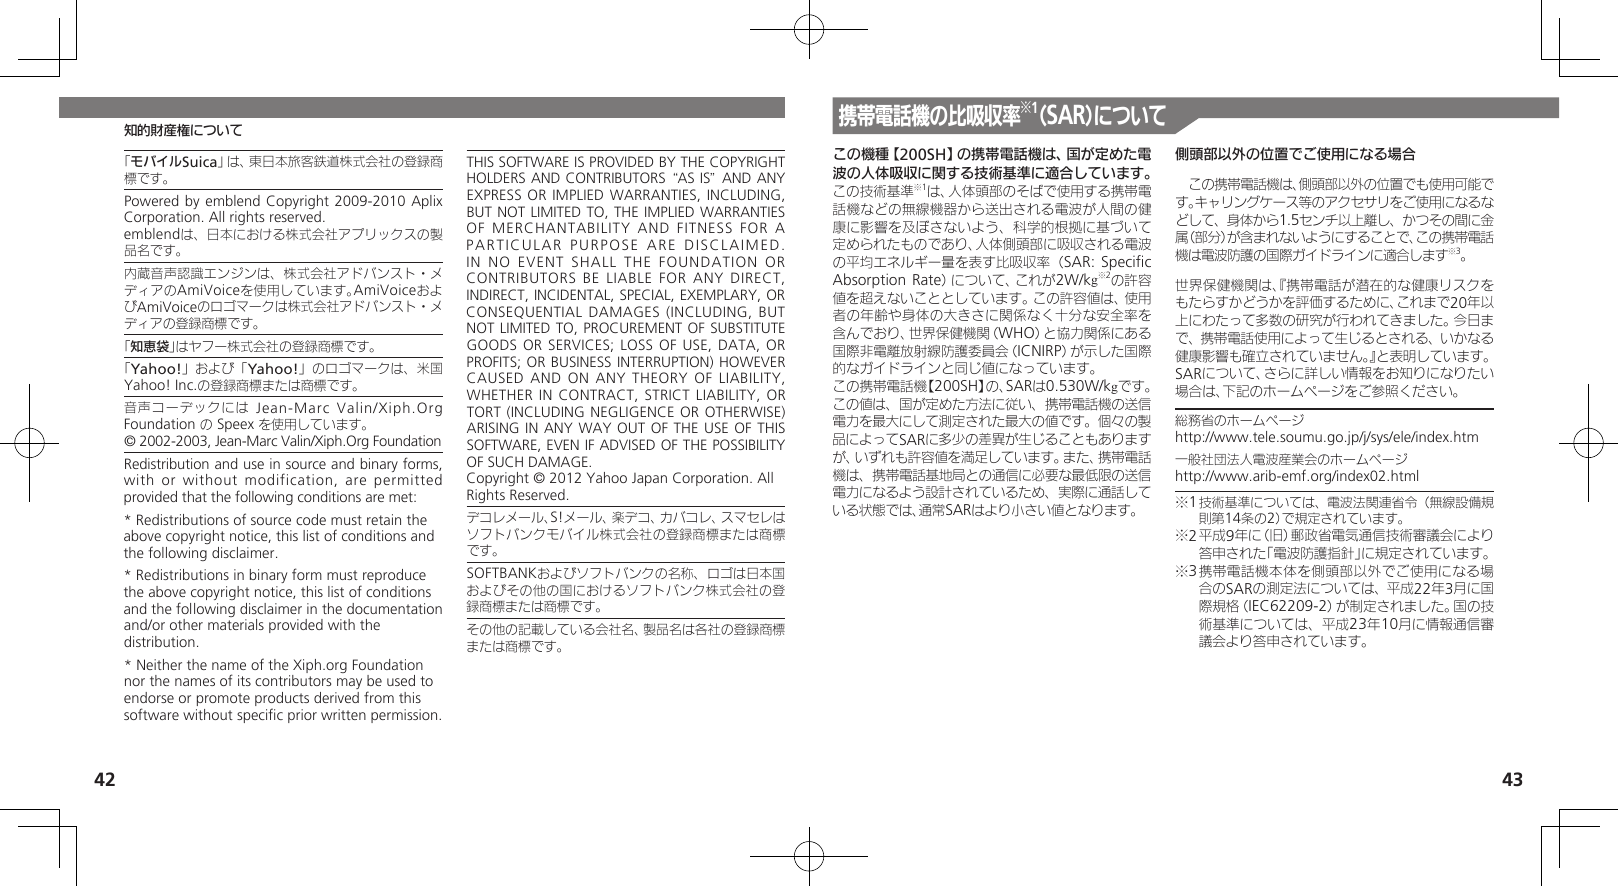 42 43知的財産権について「モバイルSuica」は、東日本旅客鉄道株式会社の登録商標です。Powered by emblend Copyright 2009-2010 Aplix Corporation. All rights reserved.emblendは、日本における株式会社アプリックスの製品名です。内蔵音声認識エンジンは、株式会社アドバンスト・メディアのAmiVoiceを使用しています。AmiVoiceおよびAmiVoiceのロゴマークは株式会社アドバンスト・メディアの登録商標です。「知恵袋」はヤフー株式会社の登録商標です。「Yahoo!」および「Yahoo!」のロゴマークは、米国Yahoo! Inc.の登録商標または商標です。音声コーデックには Jean-Marc Valin/Xiph.Org Foundation の Speex を使用しています。© 2002-2003, Jean-Marc Valin/Xiph.Org FoundationRedistribution and use in source and binary forms, with or without modification, are permitted provided that the following conditions are met:* Redistributions of source code must retain the above copyright notice, this list of conditions and the following disclaimer.* Redistributions in binary form must reproduce the above copyright notice, this list of conditions and the following disclaimer in the documentation and/or other materials provided with the distribution.* Neither the name of the Xiph.org Foundation nor the names of its contributors may be used to endorse or promote products derived from this software without speciﬁc prior written permission.THIS SOFTWARE IS PROVIDED BY THE COPYRIGHT HOLDERS AND CONTRIBUTORS “AS IS” AND ANY EXPRESS OR IMPLIED WARRANTIES, INCLUDING, BUT NOT LIMITED TO, THE IMPLIED WARRANTIES OF MERCHANTABILITY AND FITNESS FOR A PARTICULAR PURPOSE ARE DISCLAIMED. IN NO EVENT SHALL THE FOUNDATION OR CONTRIBUTORS BE LIABLE FOR ANY DIRECT, INDIRECT, INCIDENTAL, SPECIAL, EXEMPLARY, OR CONSEQUENTIAL DAMAGES (INCLUDING, BUT NOT LIMITED TO, PROCUREMENT OF SUBSTITUTE GOODS OR SERVICES; LOSS OF USE, DATA, OR PROFITS; OR BUSINESS INTERRUPTION) HOWEVER CAUSED AND ON ANY THEORY OF  LIABILITY, WHETHER IN CONTRACT, STRICT LIABILITY, OR TORT (INCLUDING NEGLIGENCE OR OTHERWISE) ARISING IN ANY WAY OUT OF THE USE  OF THIS SOFTWARE, EVEN IF ADVISED OF THE POSSIBILITY OF SUCH DAMAGE.Copyright © 2012 Yahoo Japan Corporation. All Rights Reserved.デコレメール、S!メール、楽デコ、カバコレ、スマセレはソフトバンクモバイル株式会社の登録商標または商標です。SOFTBANKおよびソフトバンクの名称、ロゴは日本国およびその他の国におけるソフトバンク株式会社の登録商標または商標です。その他の記載している会社名、製品名は各社の登録商標または商標です。この機種【200SH】の携帯電話機は、国が定めた電波の人体吸収に関する技術基準に適合しています。 この技術基準※1は、人体頭部のそばで使用する携帯電話機などの無線機器から送出される電波が人間の健康に影響を及ぼさないよう、科学的根拠に基づいて定められたものであり、人体側頭部に吸収される電波の平均エネルギー量を表す比吸収率（SAR: Speciﬁc Absorption Rate）について、これが2W/kg※2の許容値を超えないこととしています。この許容値は、使用者の年齢や身体の大きさに関係なく十分な安全率を含んでおり、世界保健機関（WHO）と協力関係にある国際非電離放射線防護委員会（ICNIRP）が示した国際的なガイドラインと同じ値になっています。この携帯電話機【200SH】の、SARは0.530W/kgです。この値は、国が定めた方法に従い、携帯電話機の送信電力を最大にして測定された最大の値です。個々の製品によってSARに多少の差異が生じることもありますが、いずれも許容値を満足しています。また、携帯電話機は、携帯電話基地局との通信に必要な最低限の送信電力になるよう設計されているため、実際に通話している状態では、通常SARはより小さい値となります。側頭部以外の位置でご使用になる場合　この携帯電話機は、側頭部以外の位置でも使用可能です。キャリングケース等のアクセサリをご使用になるなどして、身体から1.5センチ以上離し、かつその間に金属（部分）が含まれないようにすることで、この携帯電話機は電波防護の国際ガイドラインに適合します※3。世界保健機関は、『携帯電話が潜在的な健康リスクをもたらすかどうかを評価するために、これまで20年以上にわたって多数の研究が行われてきました。今日まで、携帯電話使用によって生じるとされる、いかなる健康影響も確立されていません。』と表明しています。SARについて、さらに詳しい情報をお知りになりたい場合は、下記のホームページをご参照ください。総務省のホームページhttp://www.tele.soumu.go.jp/j/sys/ele/index.htm一般社団法人電波産業会のホームページhttp://www.arib-emf.org/index02.html※1 技術基準については、電波法関連省令（無線設備規則第14条の2）で規定されています。※2 平成9年に（旧）郵政省電気通信技術審議会により答申された「電波防護指針」に規定されています。※3 携帯電話機本体を側頭部以外でご使用になる場合のSARの測定法については、平成22年3月に国際規格（IEC62209-2）が制定されました。国の技術基準については、平成23年10月に情報通信審議会より答申されています。携帯電話機の比吸収率※1（SAR）について